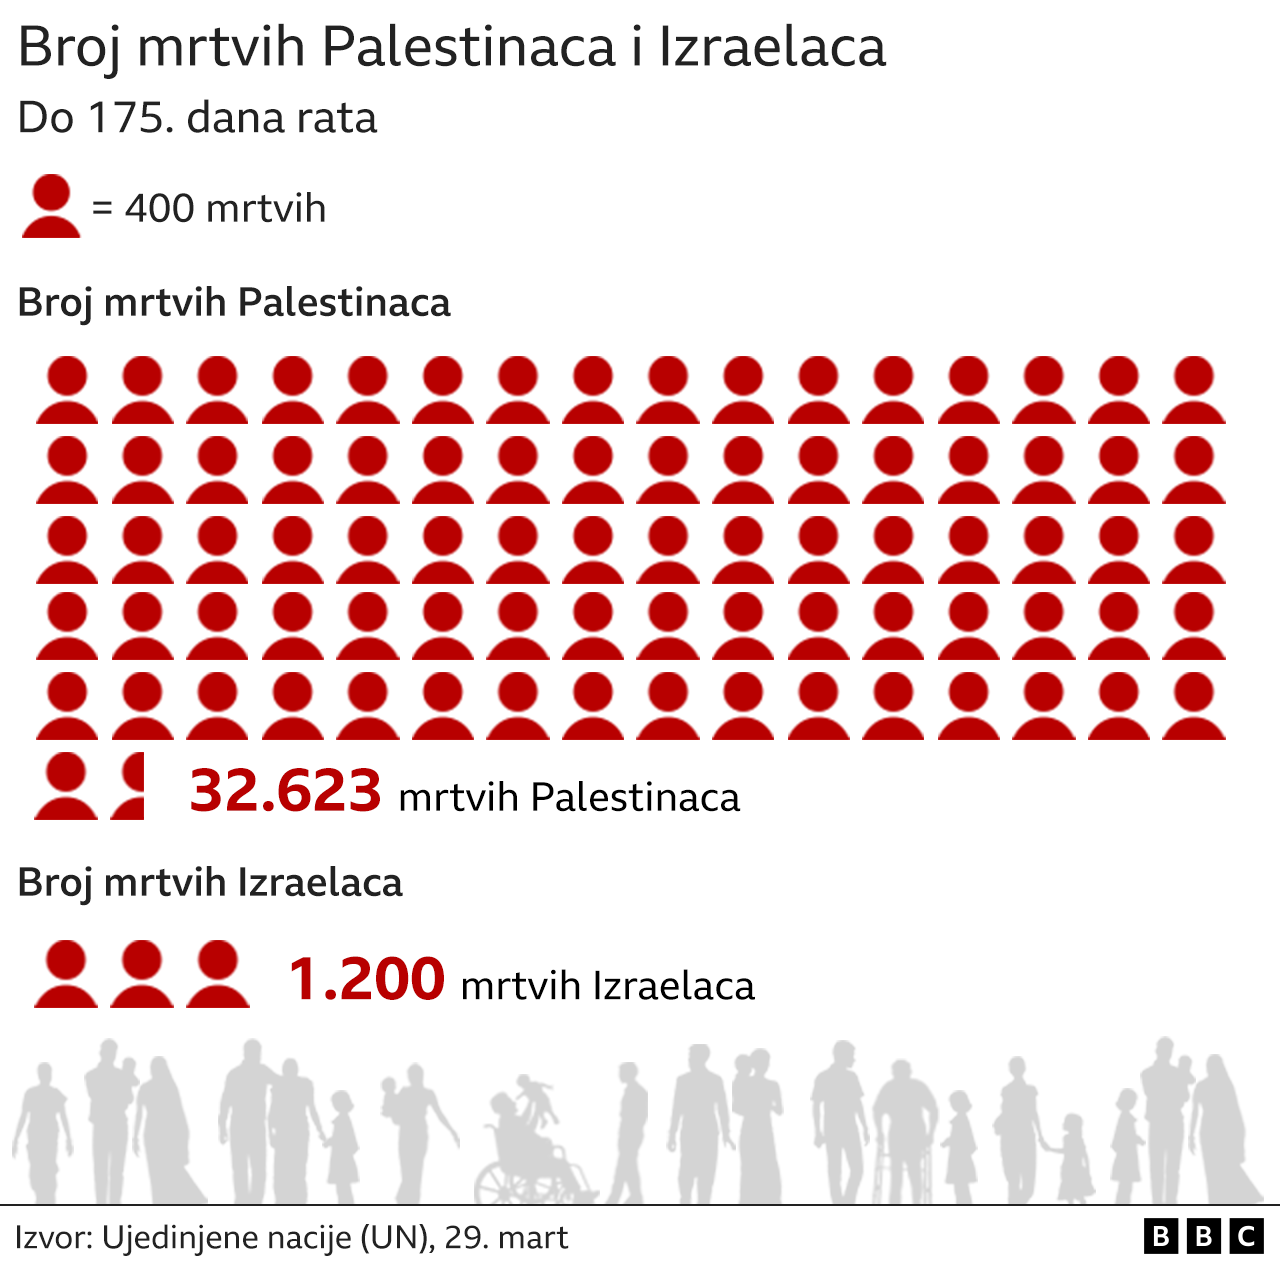 ubijeni Palestinci i Izraelci